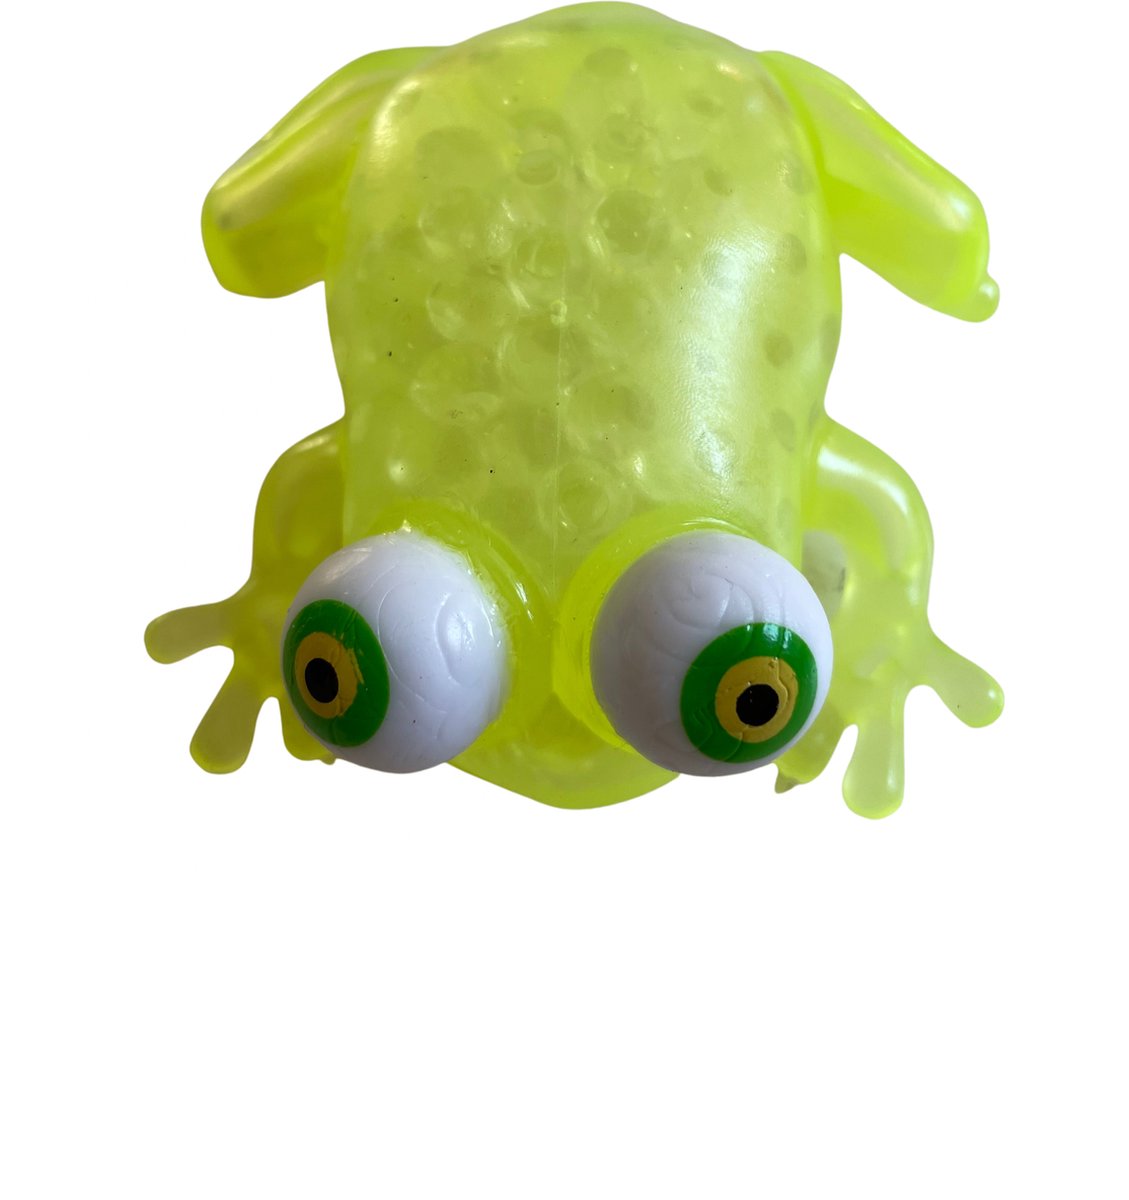 Hoogwaardige Kikker / Frog Knijpbal Fdiget | Stressbal / Squishy |  Anti-stress Speelgoed - Geel